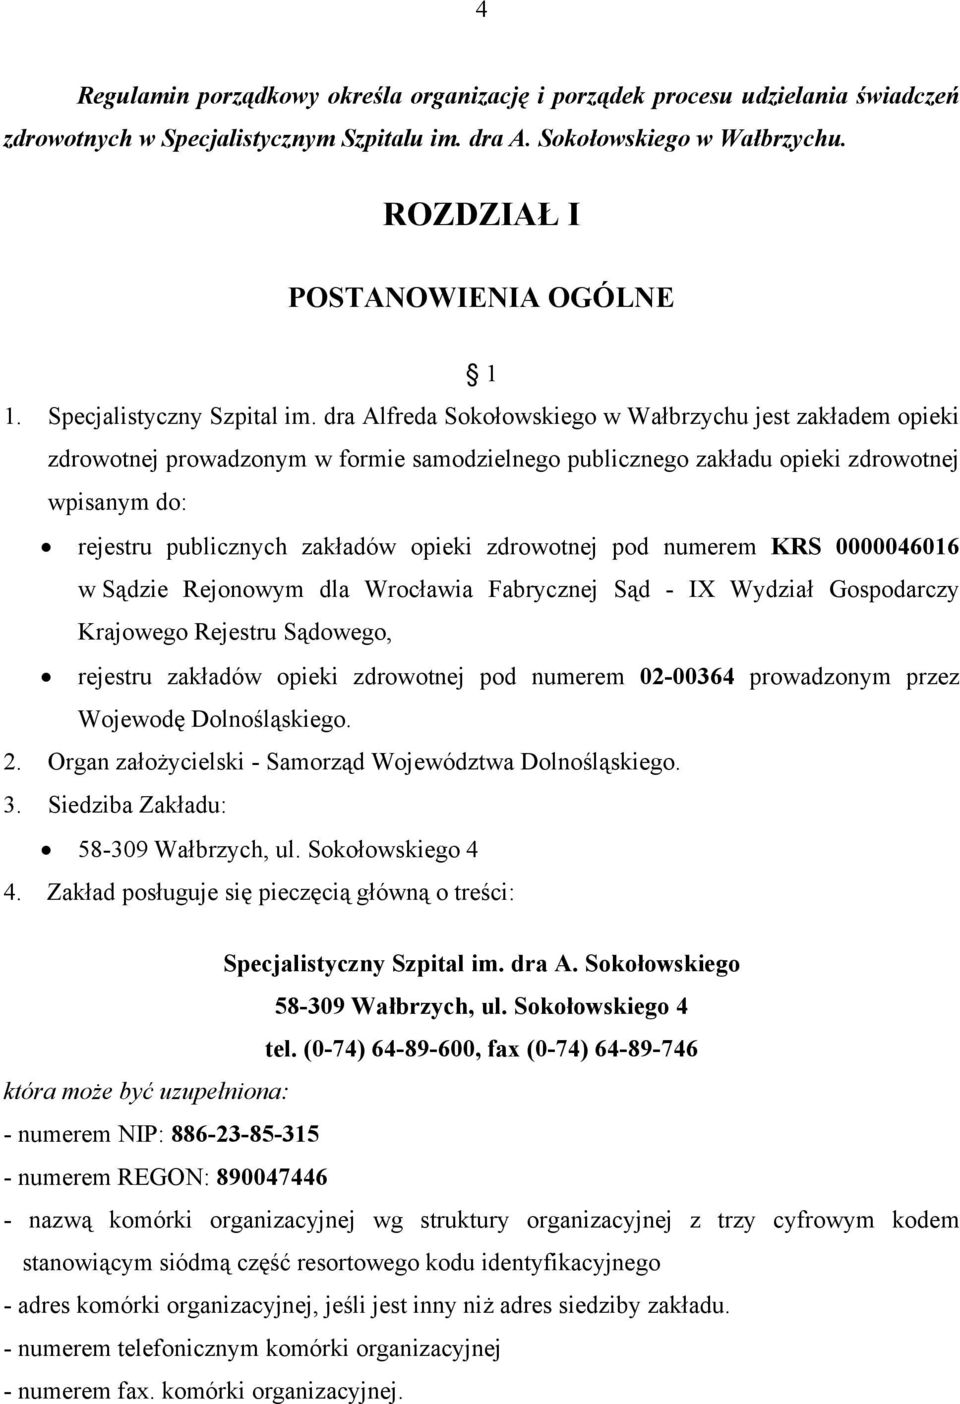 dra Alfreda Sokołowskiego w Wałbrzychu jest zakładem opieki zdrowotnej prowadzonym w formie samodzielnego publicznego zakładu opieki zdrowotnej wpisanym do: rejestru publicznych zakładów opieki